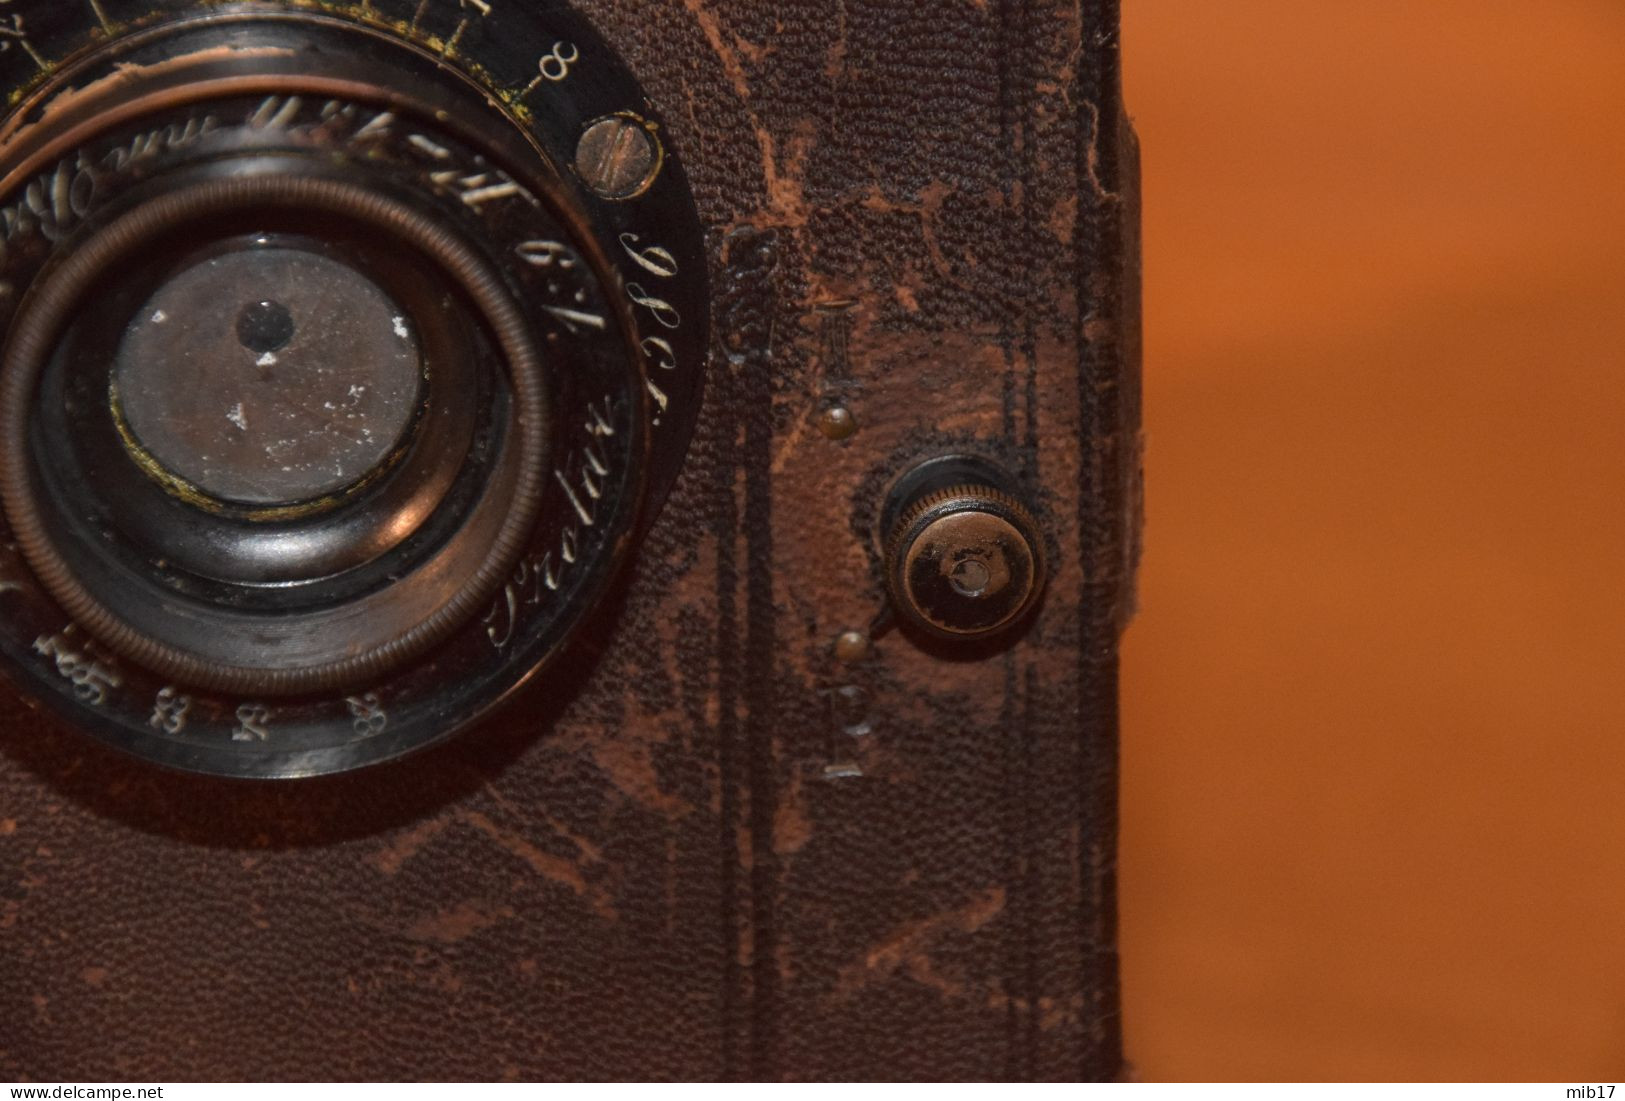 appareil photo à plaques sans marque style détective année env.1910 obj PROTAR/ZEISS - F KORISTKA dist ENRIQUE LEPAGE